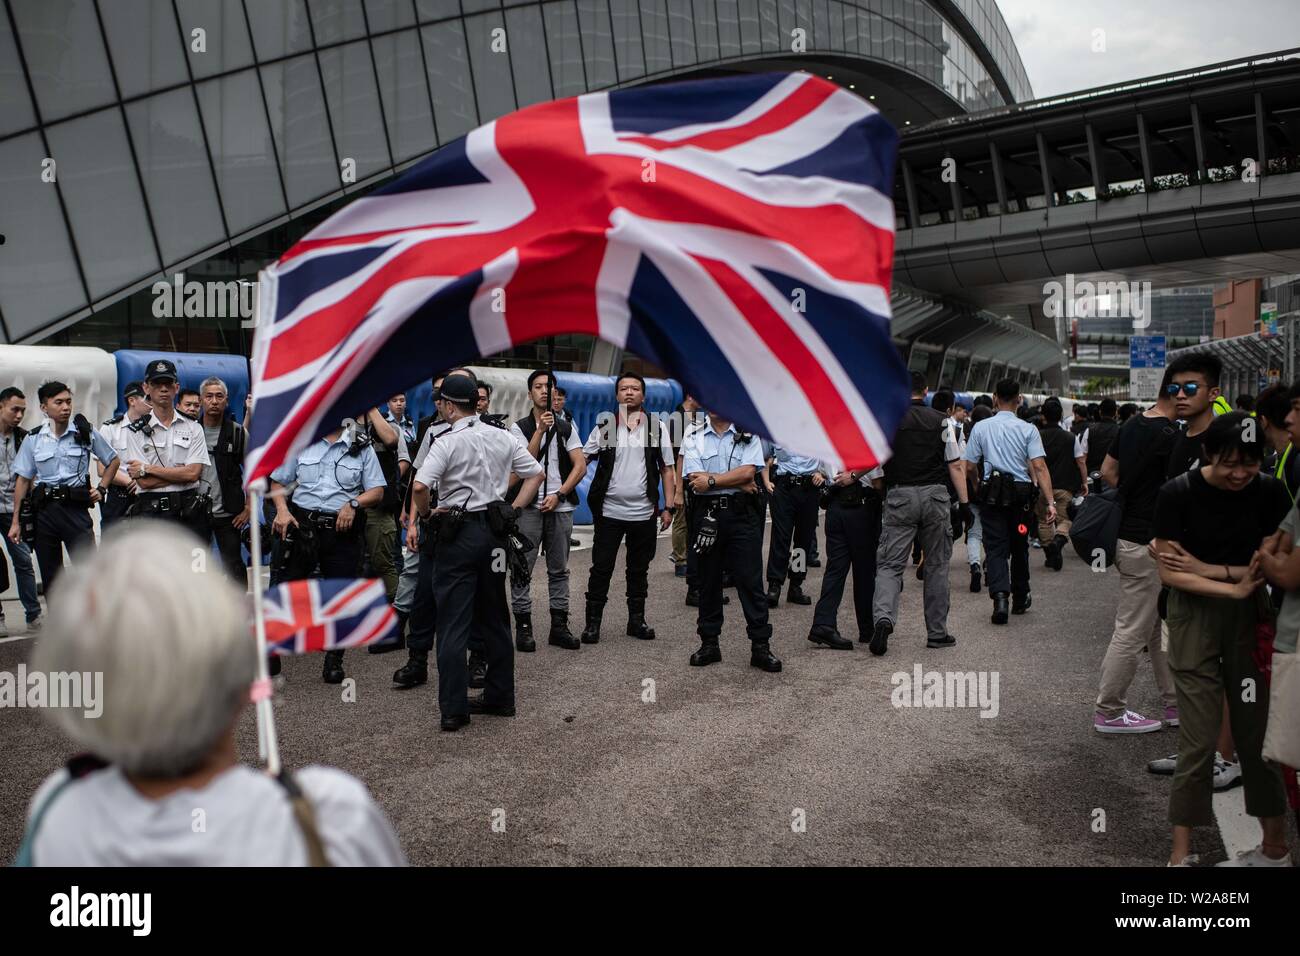 Les vagues un manifestant le drapeau britannique devant un groupe d'agents de police au cours de la manifestation contre la loi sur l'extradition vers la Chine. Banque D'Images